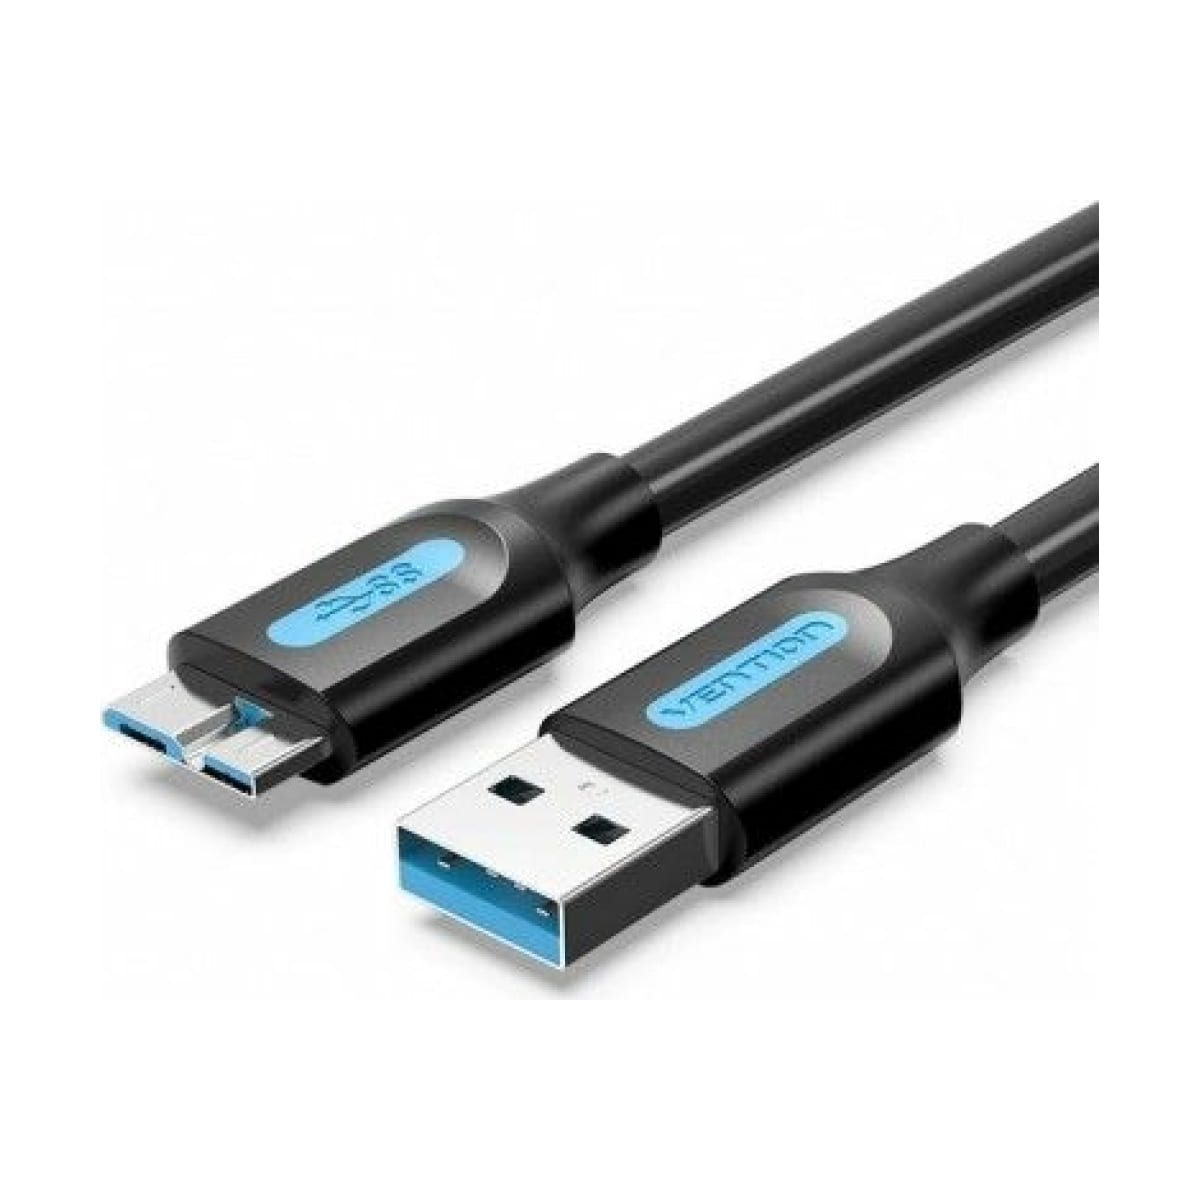 Кабель Vention USB 3.0 AM/micro B - 0,5м. (COPBD) кабель для samsung galaxy tab для зарядки и передачи данных широкий разъем 1м note 10 1 p7500 p7320 p7300 p6800 p5100 p3100 p1000